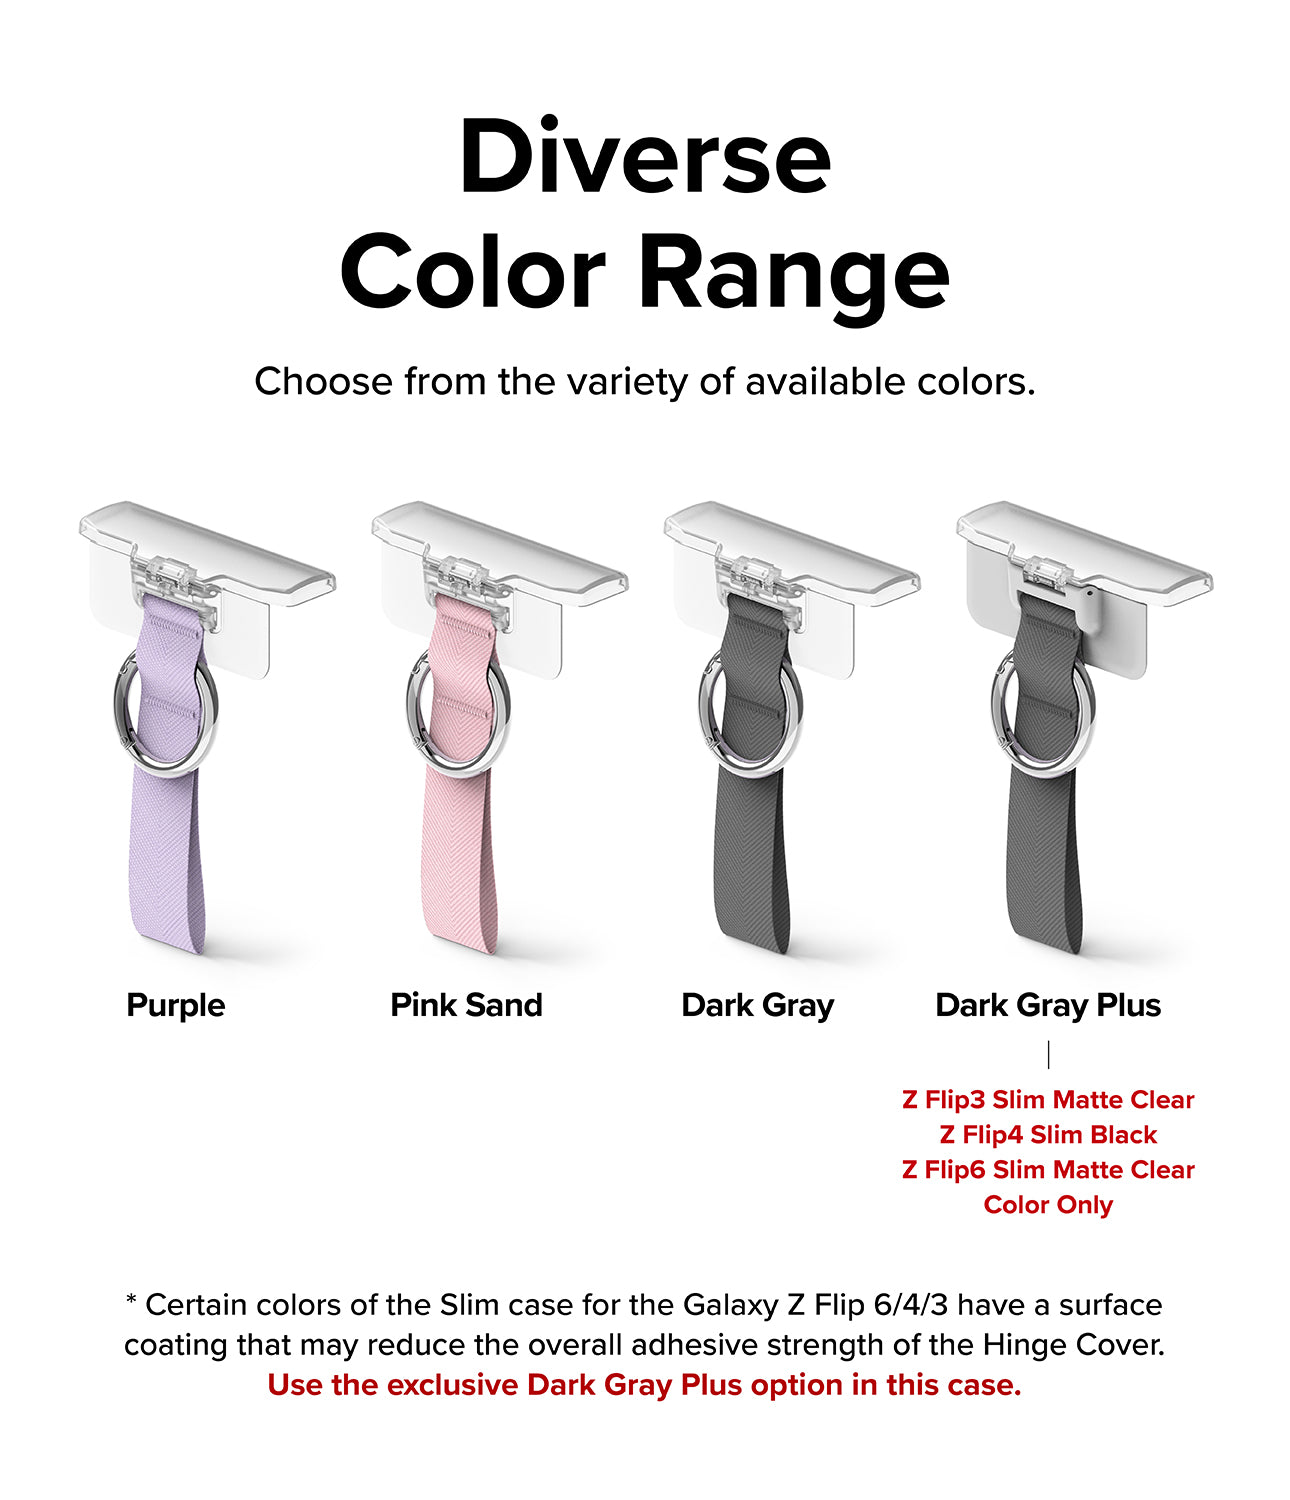 Diverse Color Range